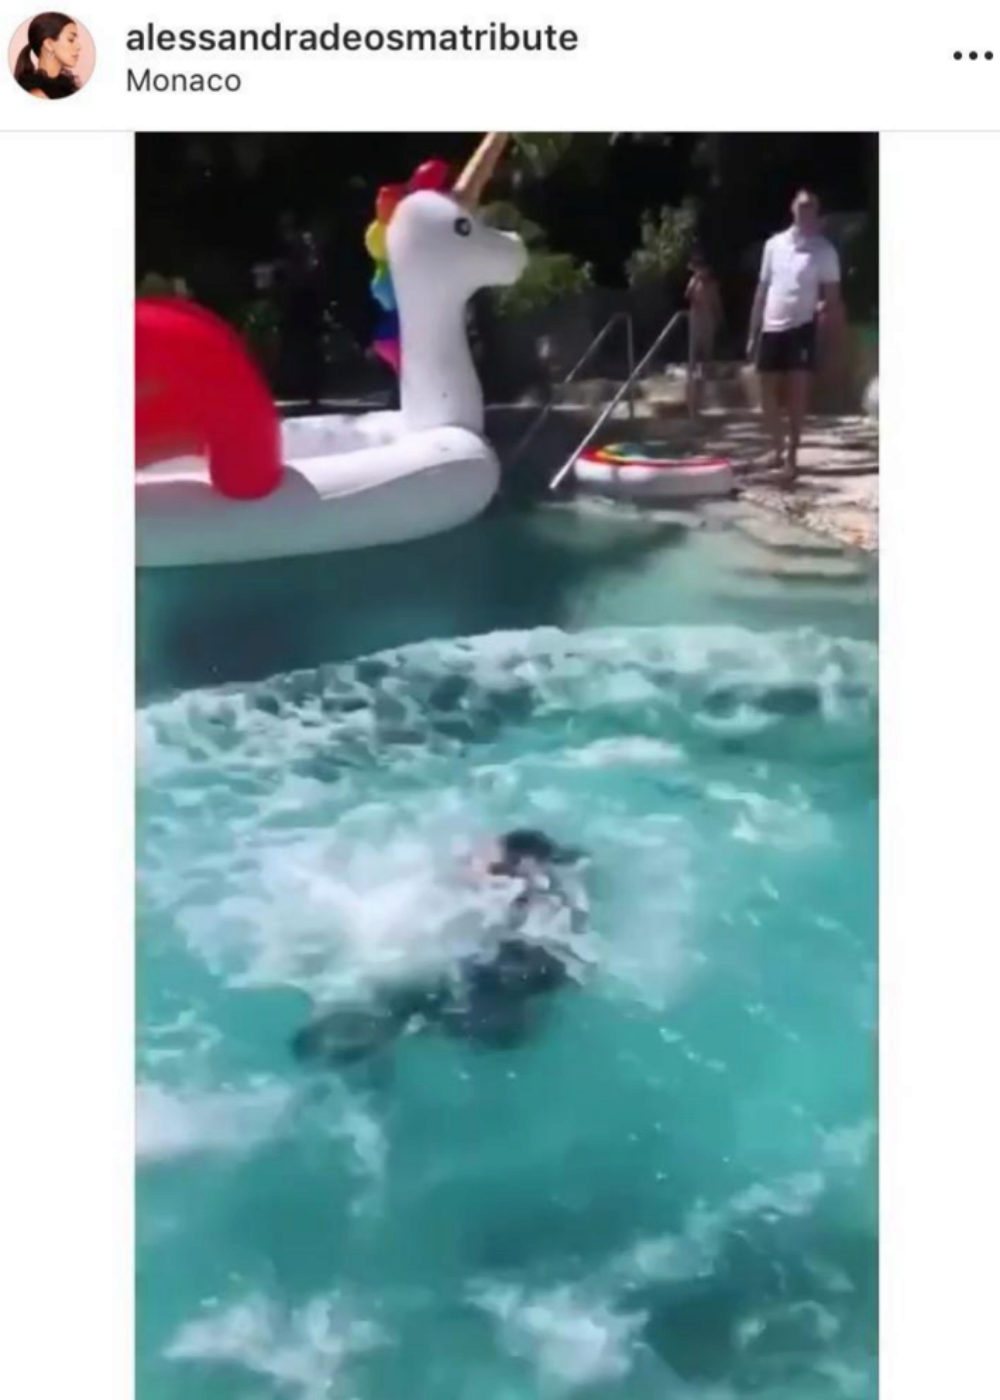 Dimitri Rassam sumergido en la piscina en su cóctel de tarde tras dar el sí quiero.